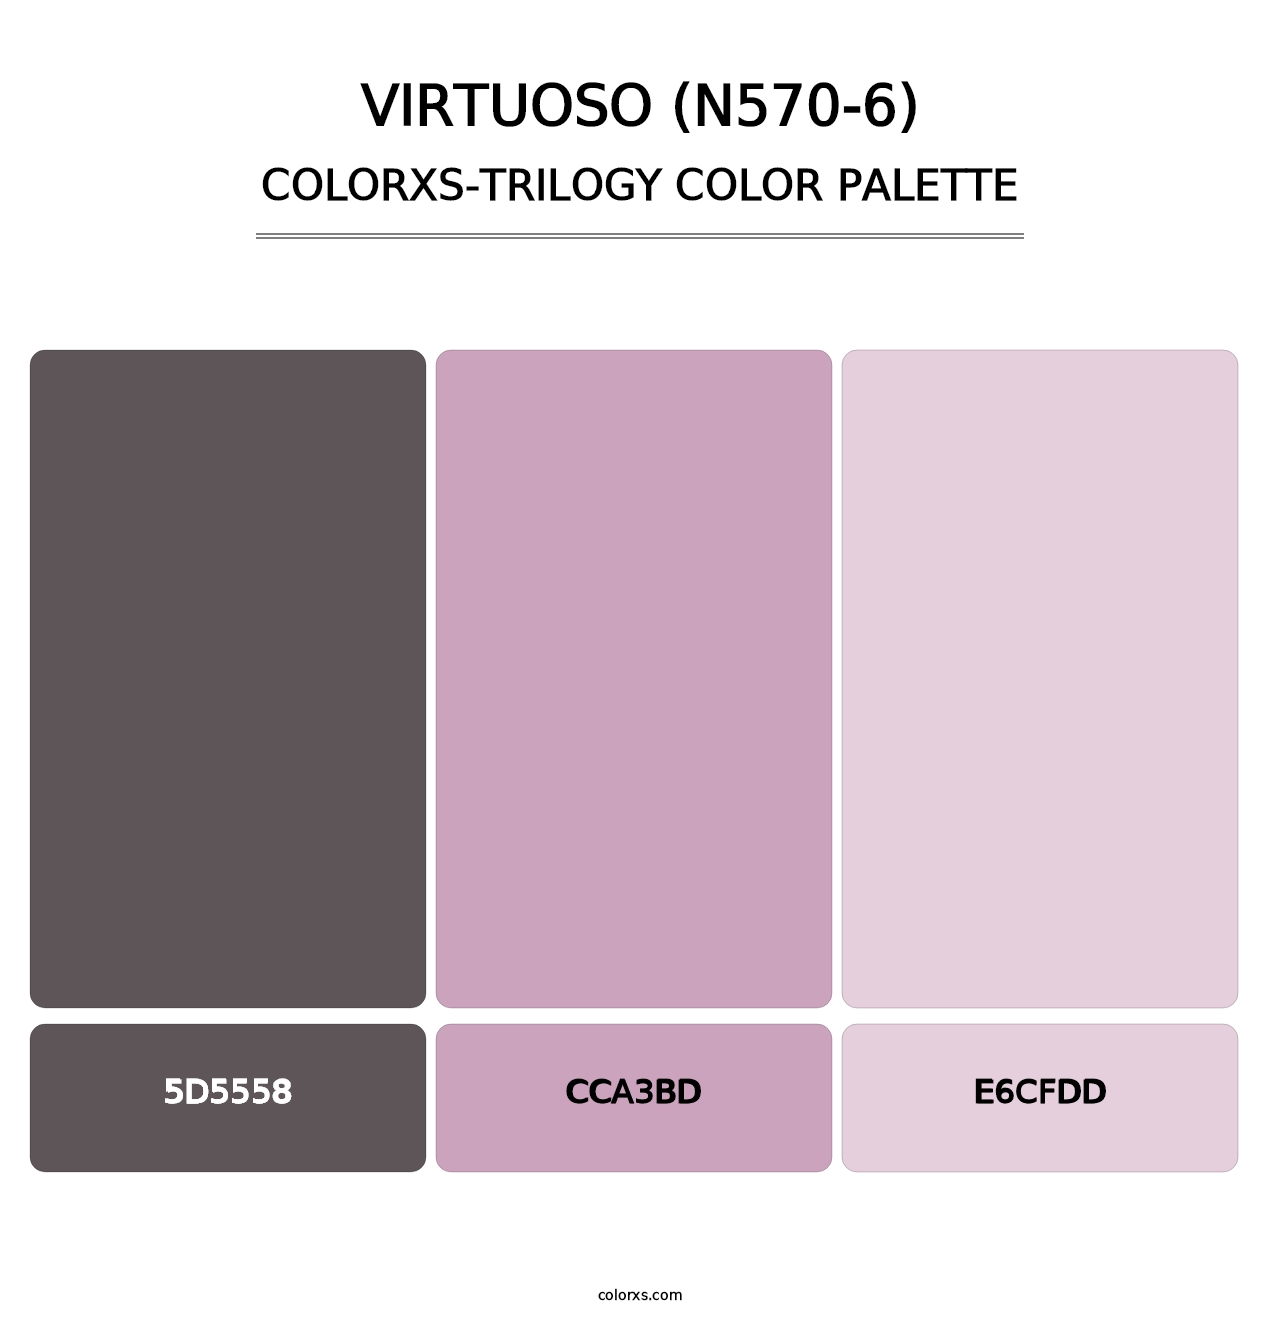 Virtuoso (N570-6) - Colorxs Trilogy Palette